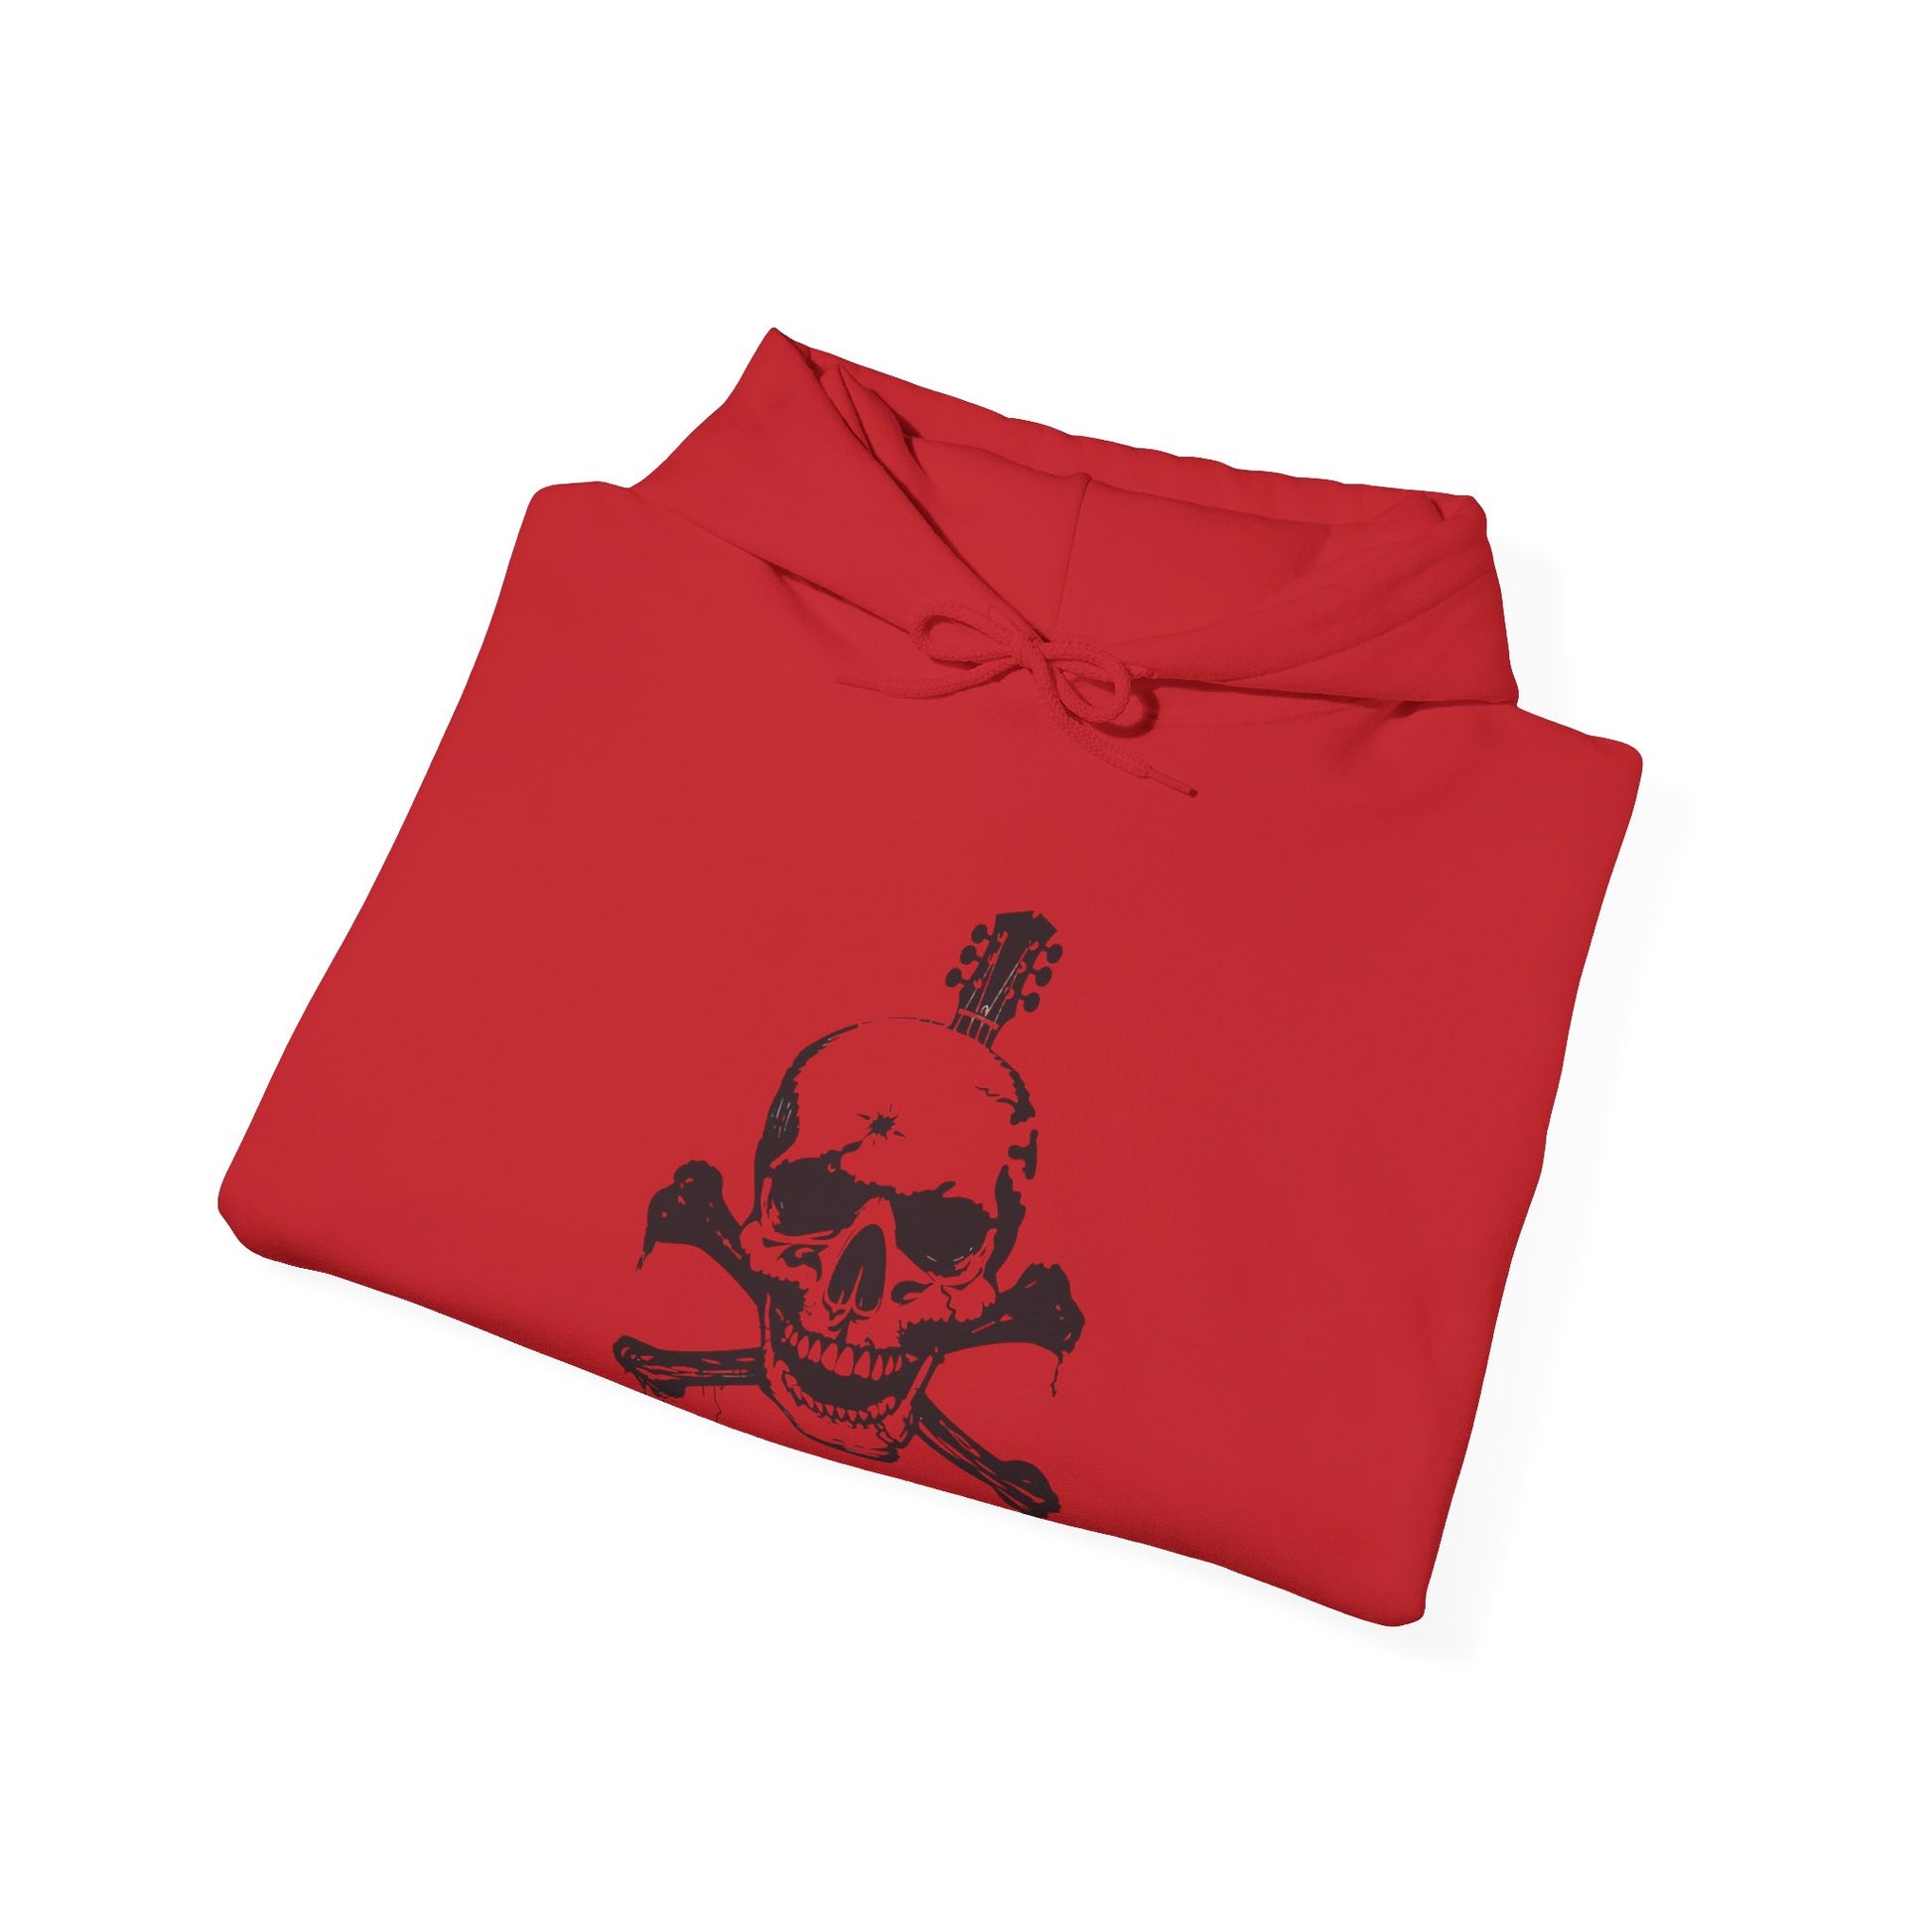 Guitar Skull Cross Bones Unisex Heavy Blend™ Hooded Sweatshirt - Premium Hoodie from Printify - Just $39.34! Shop now at Lizard Vigilante